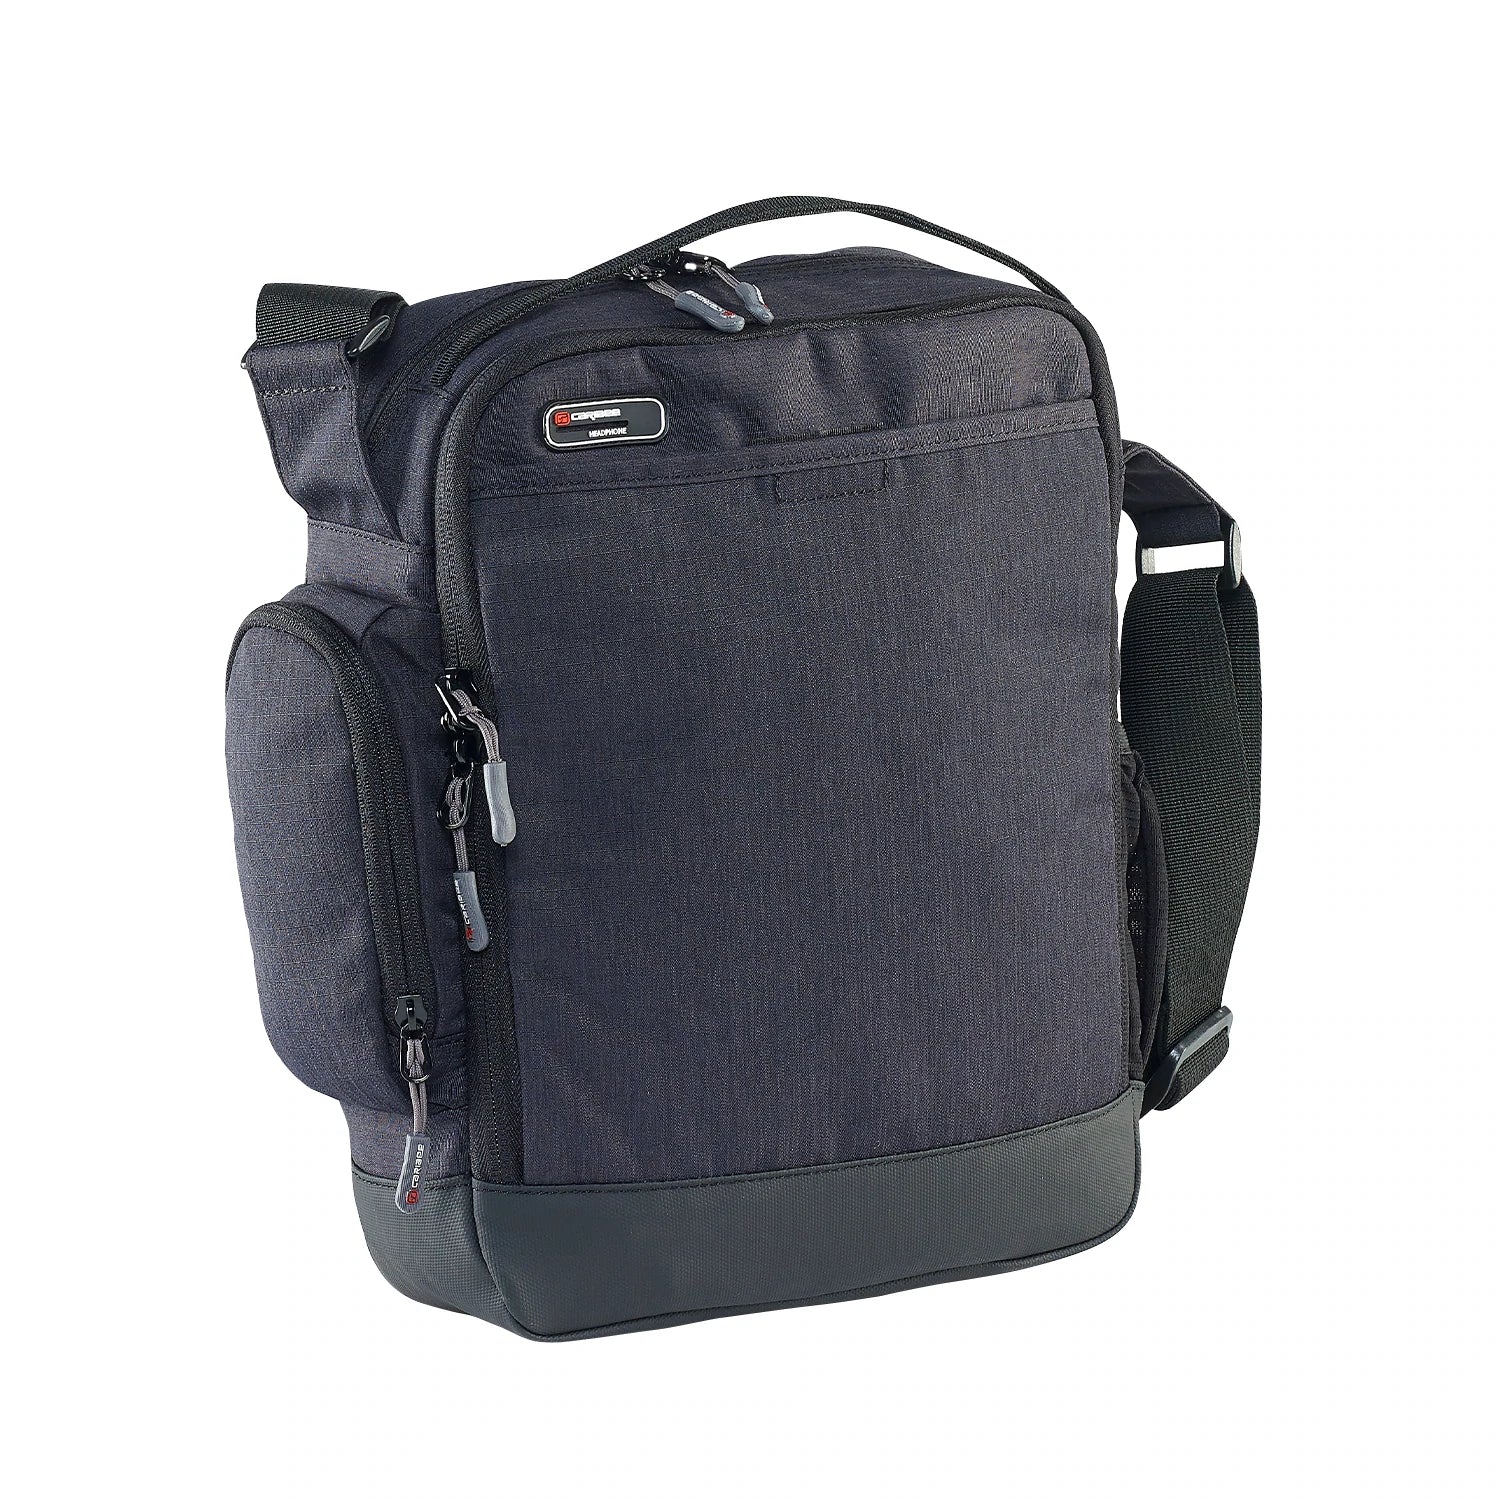 Caribee - Departure Bag 2.0 Travel Shoulder Bag-2